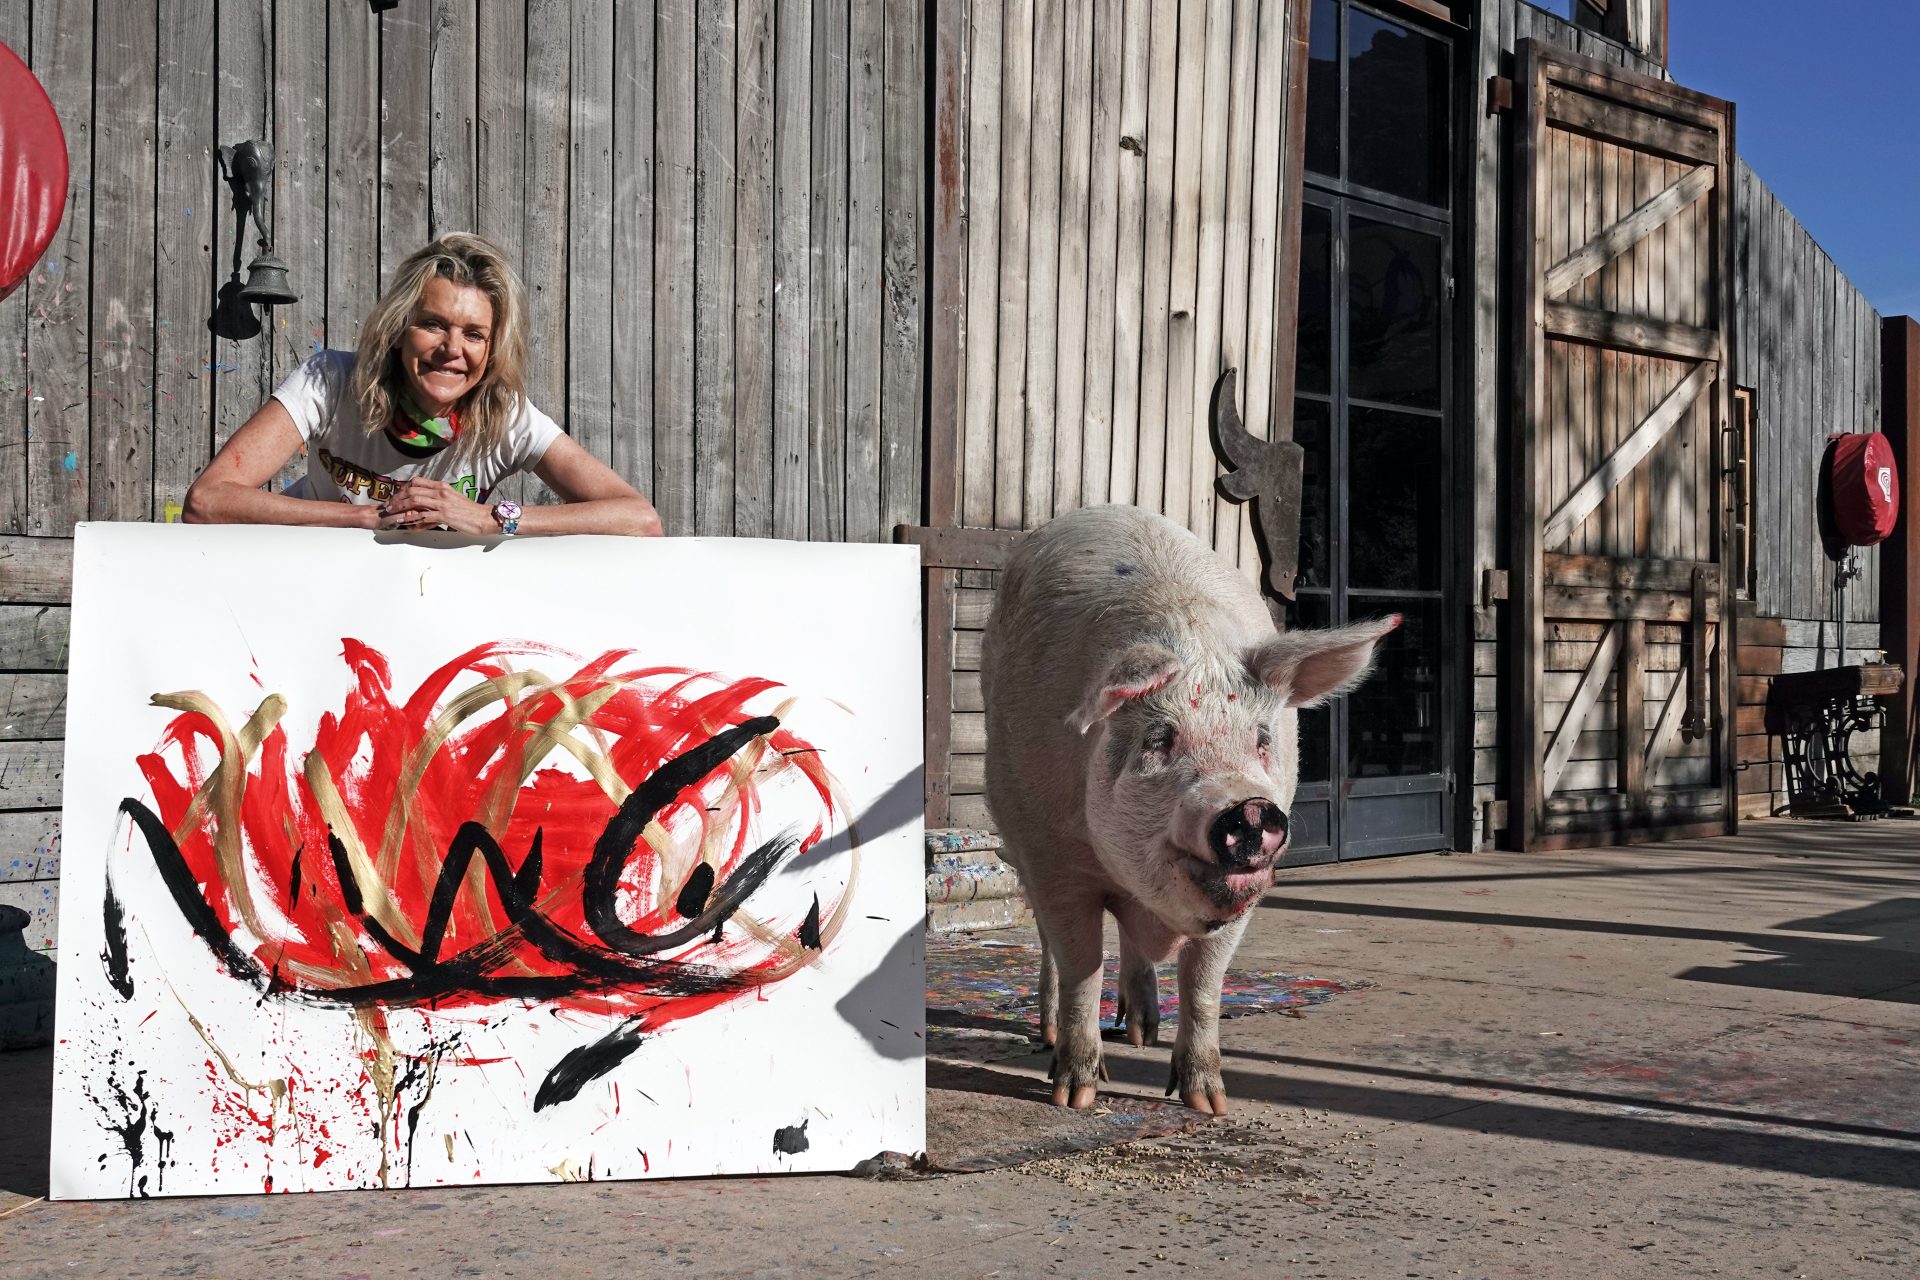 Pigcasso, het schilderende varken dat groot geld binnenharkt met haar kunst